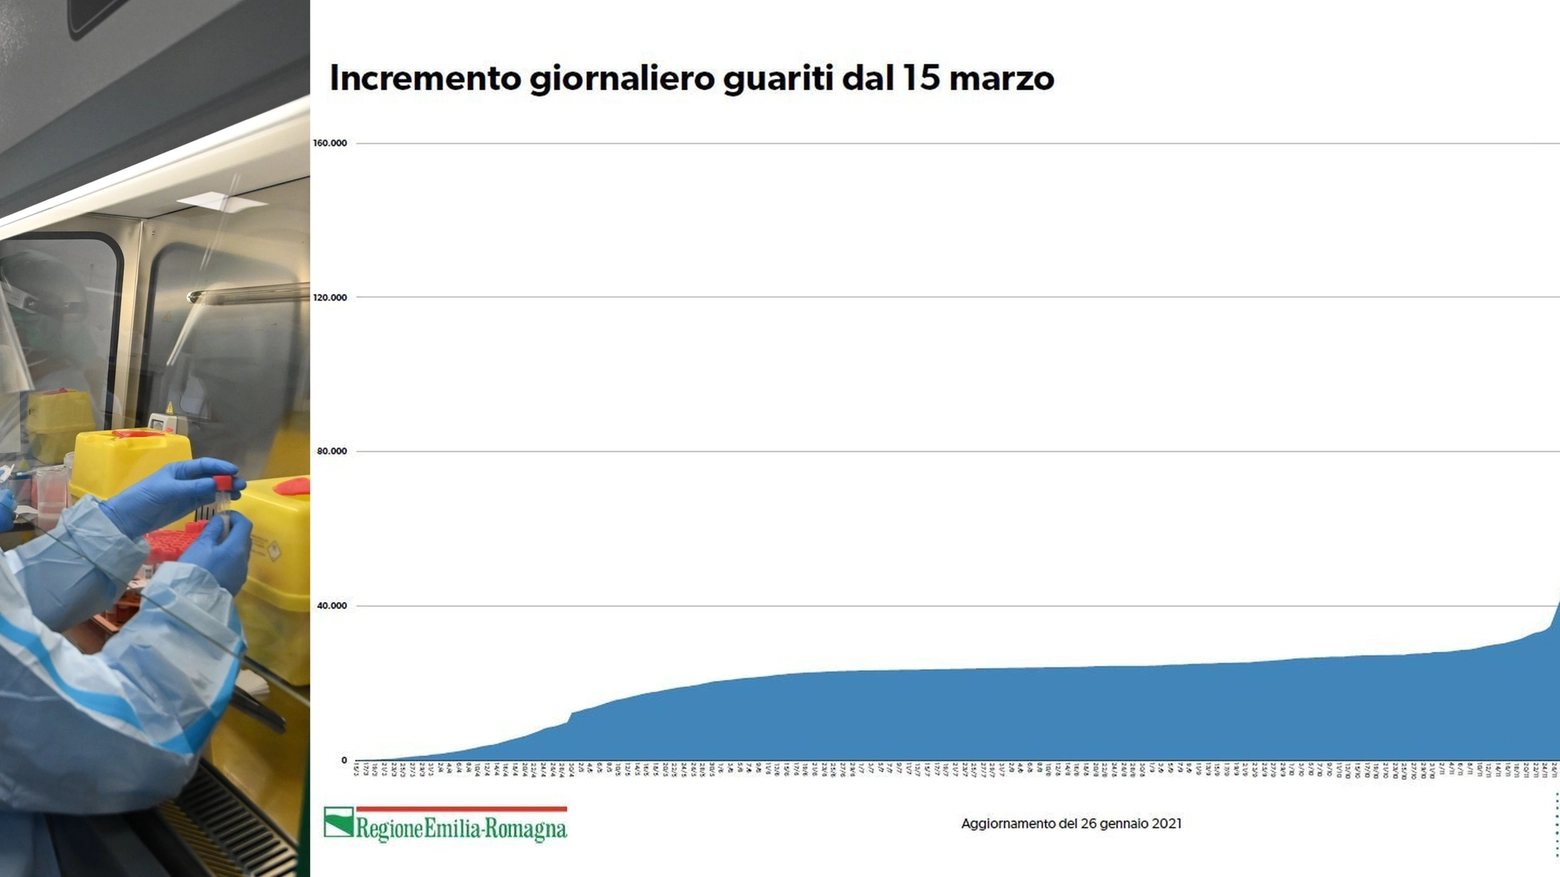 Covid Emilia Romagna: il grafico mostra l'incremento dei guariti